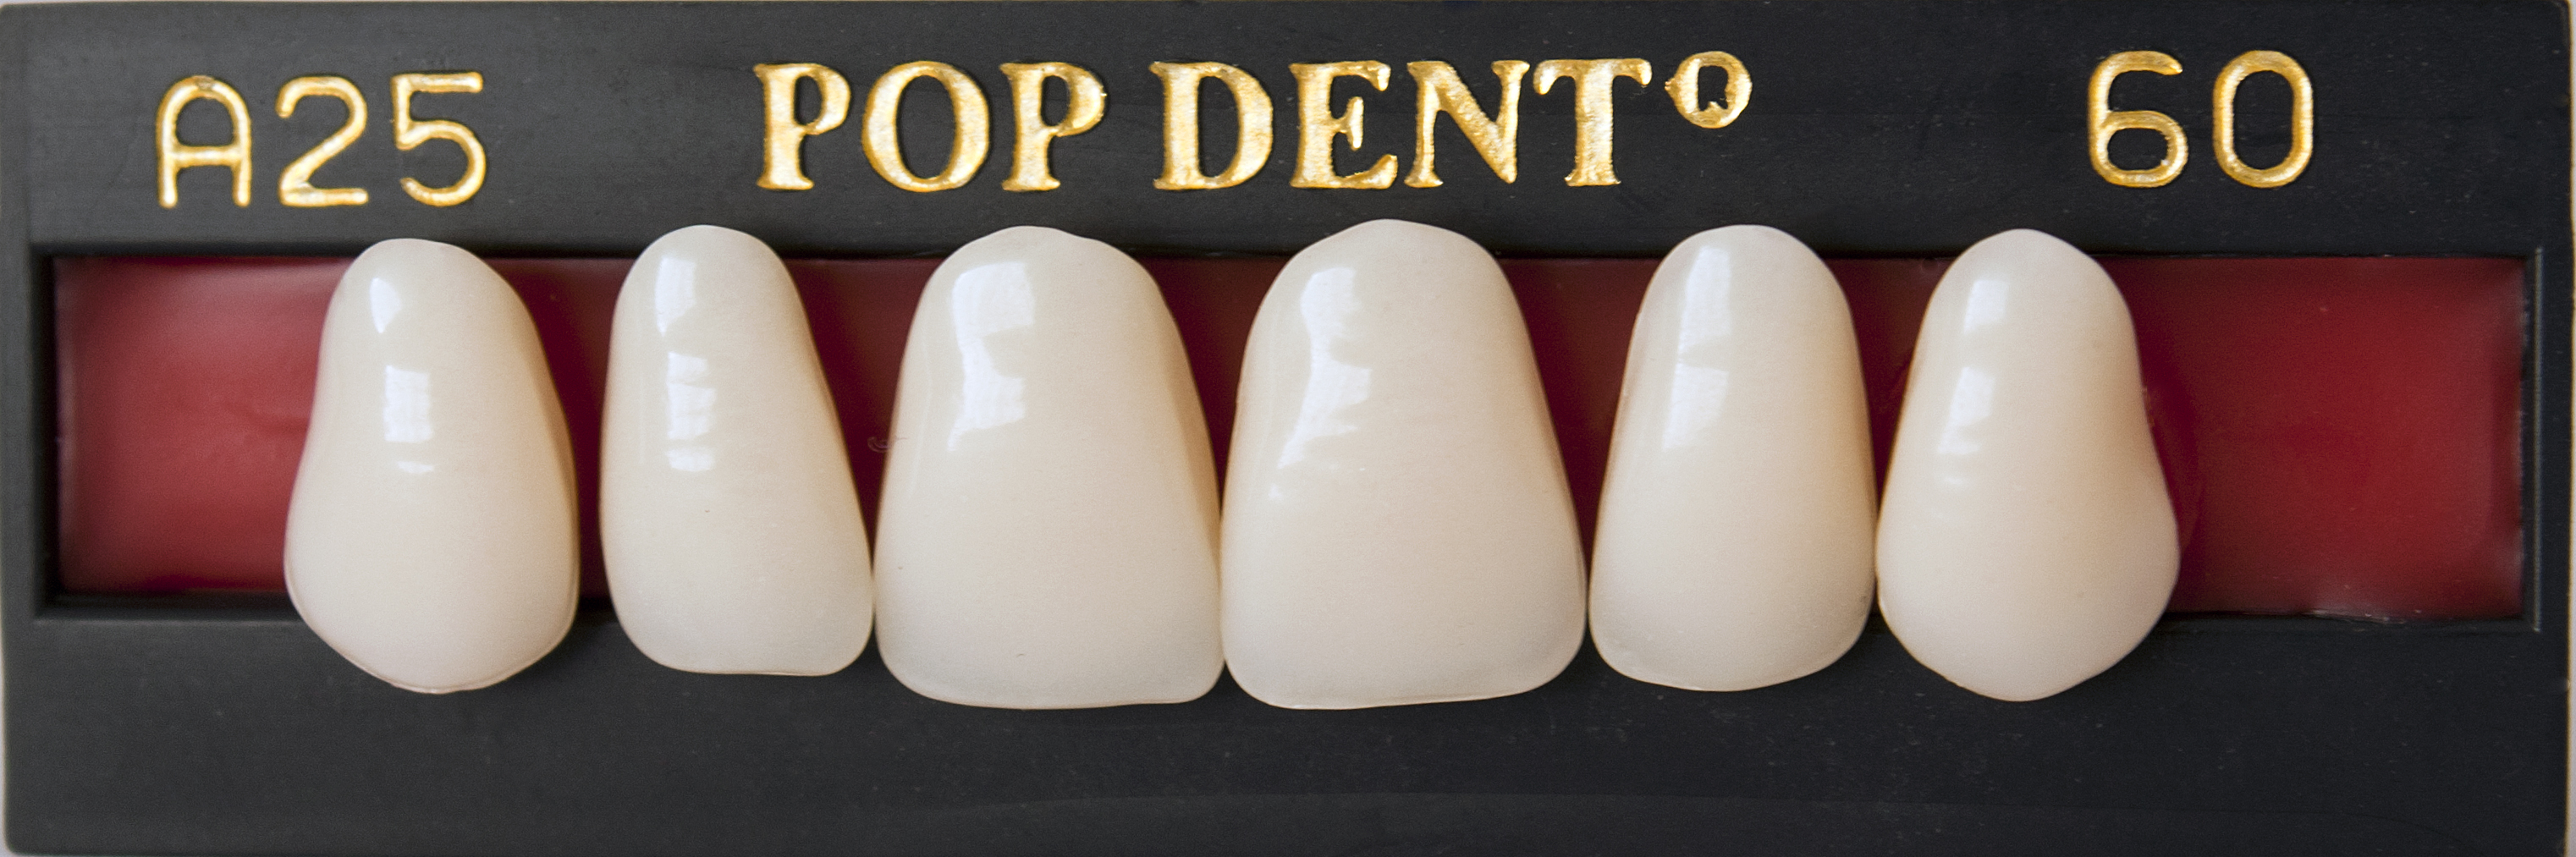 Dente DentBras Pop-Dent Modelos Anteriores 